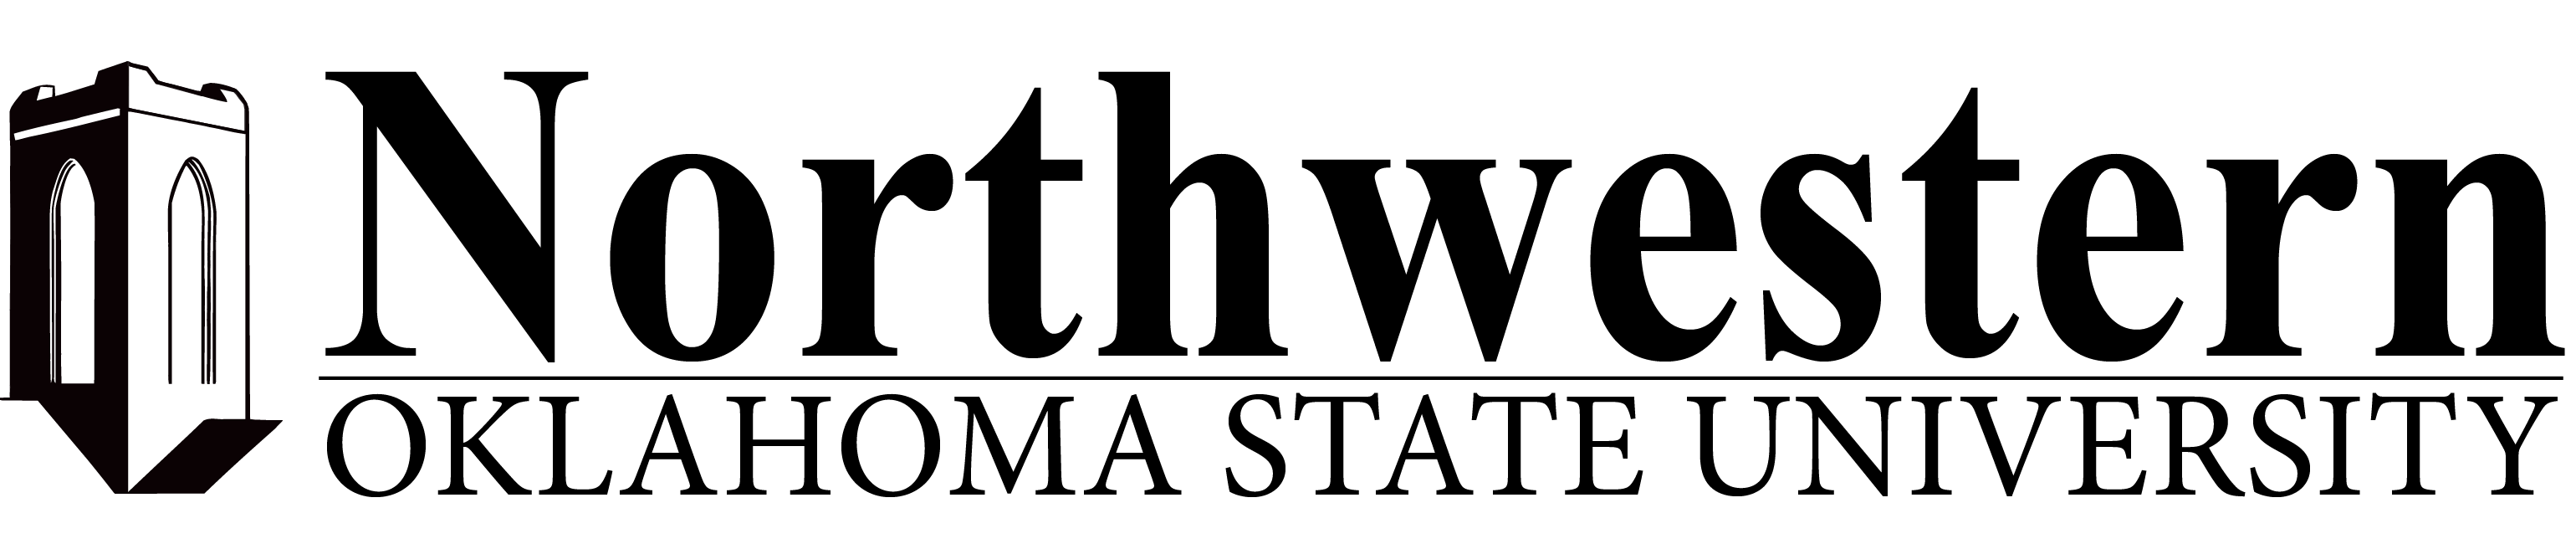 Nwosu Ranger Logo - Publication Guidelines & Logo Standards. Northwestern Oklahoma